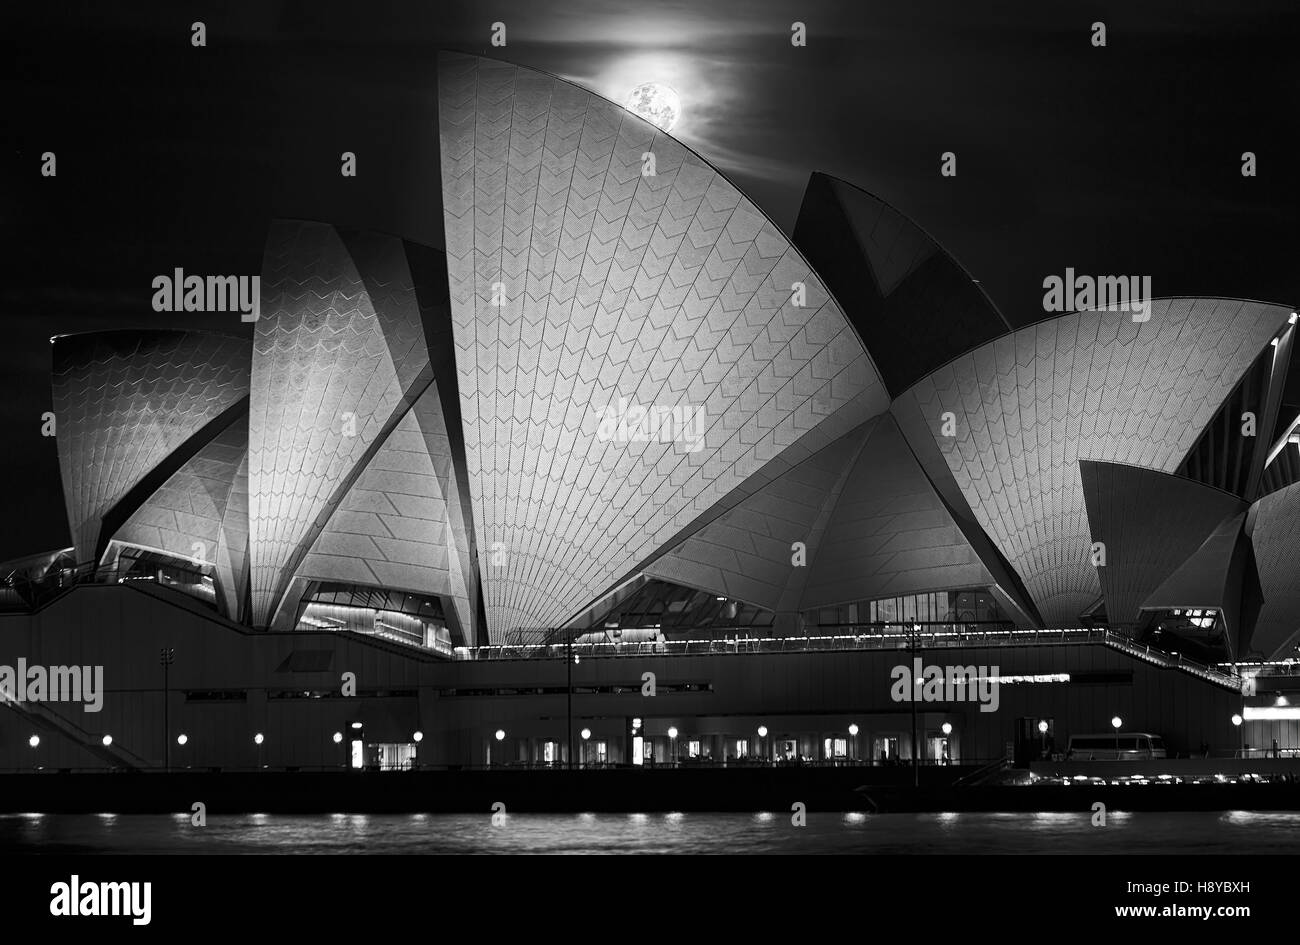 Sydney, Australien - 15. November 2016: Super Vollmond über Bergen über Sydney Opera House in Australien während einzigartige Astronomie Veranstaltung nach Sonnenuntergang in dunklen n Stockfoto